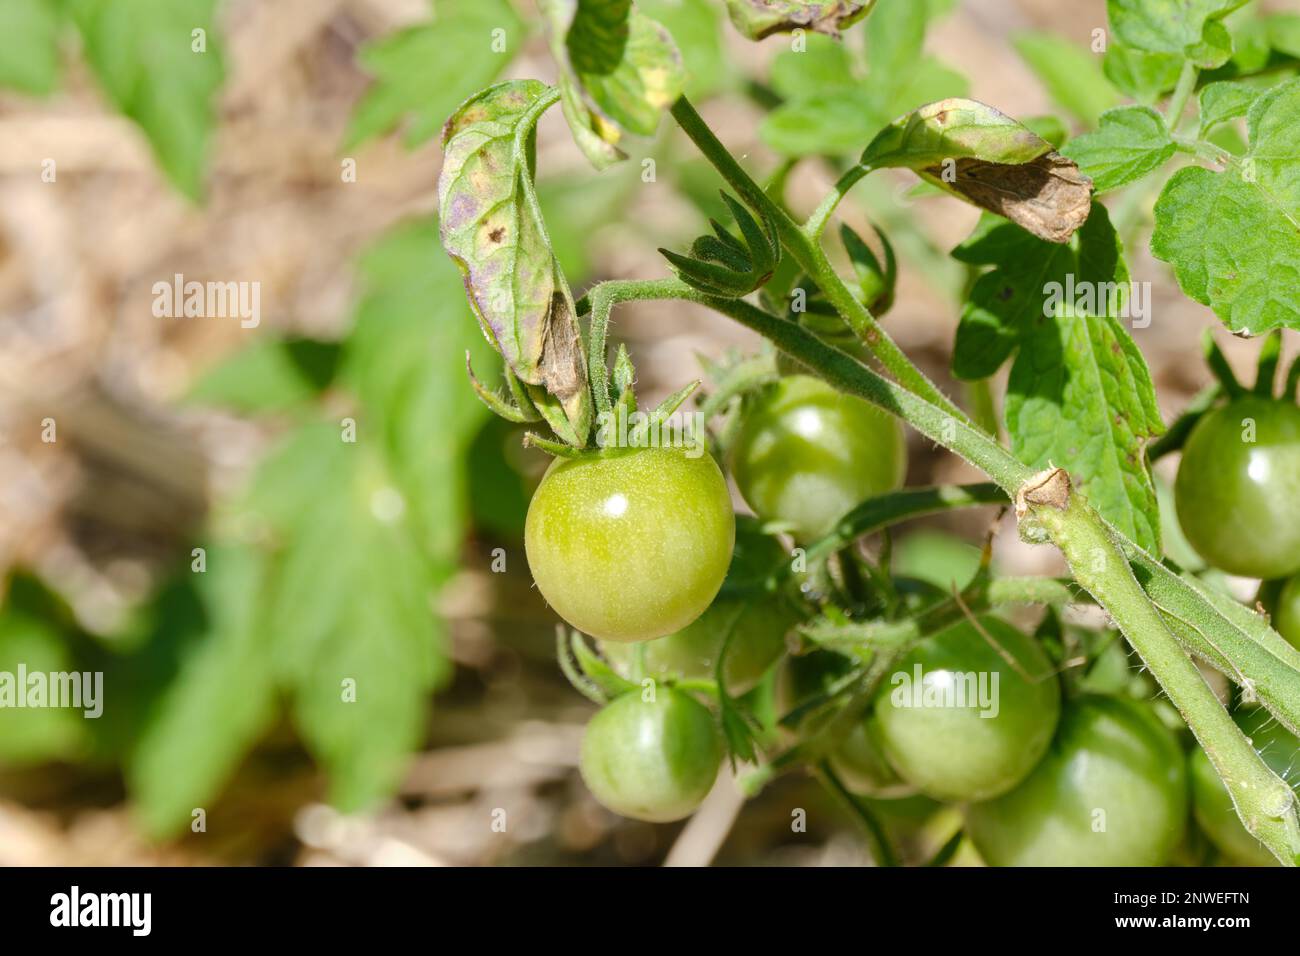 Un piccolo pomodoro verde, non maturo pende sul suo gambo in un giardino. Il pomodoro è visto da vicino tra gli altri sullo sfondo. Foto Stock